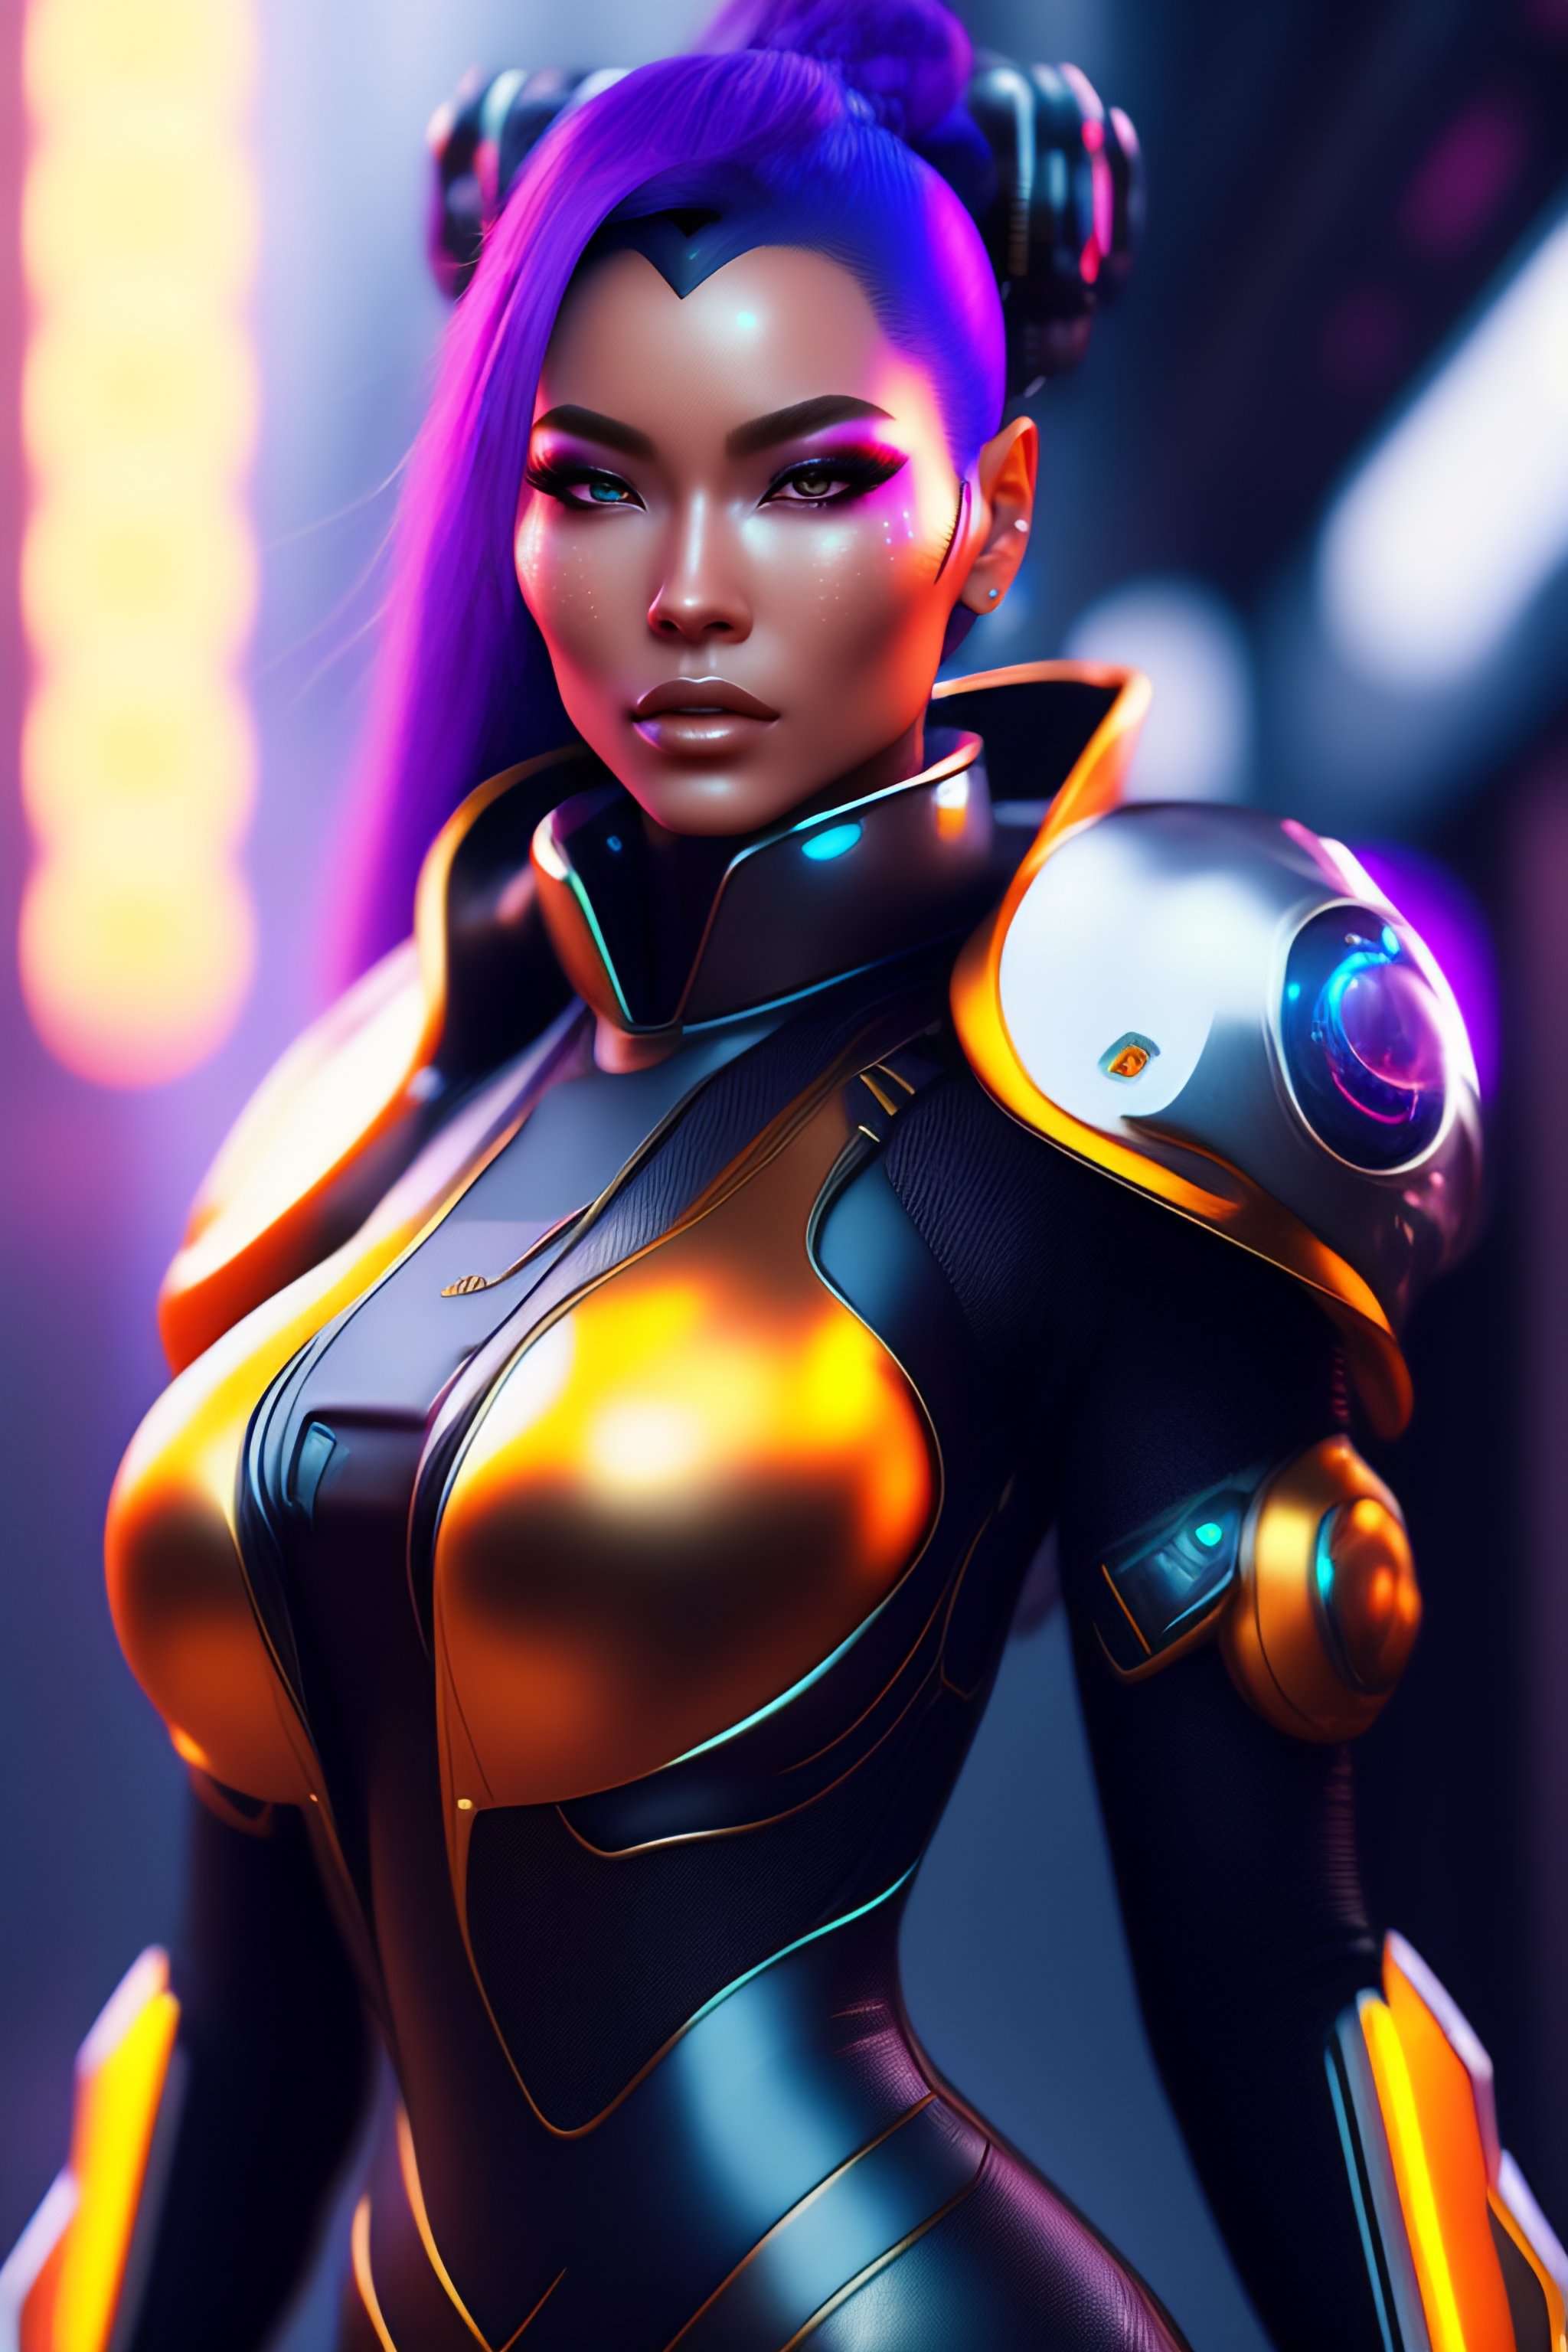 female cyborg costume